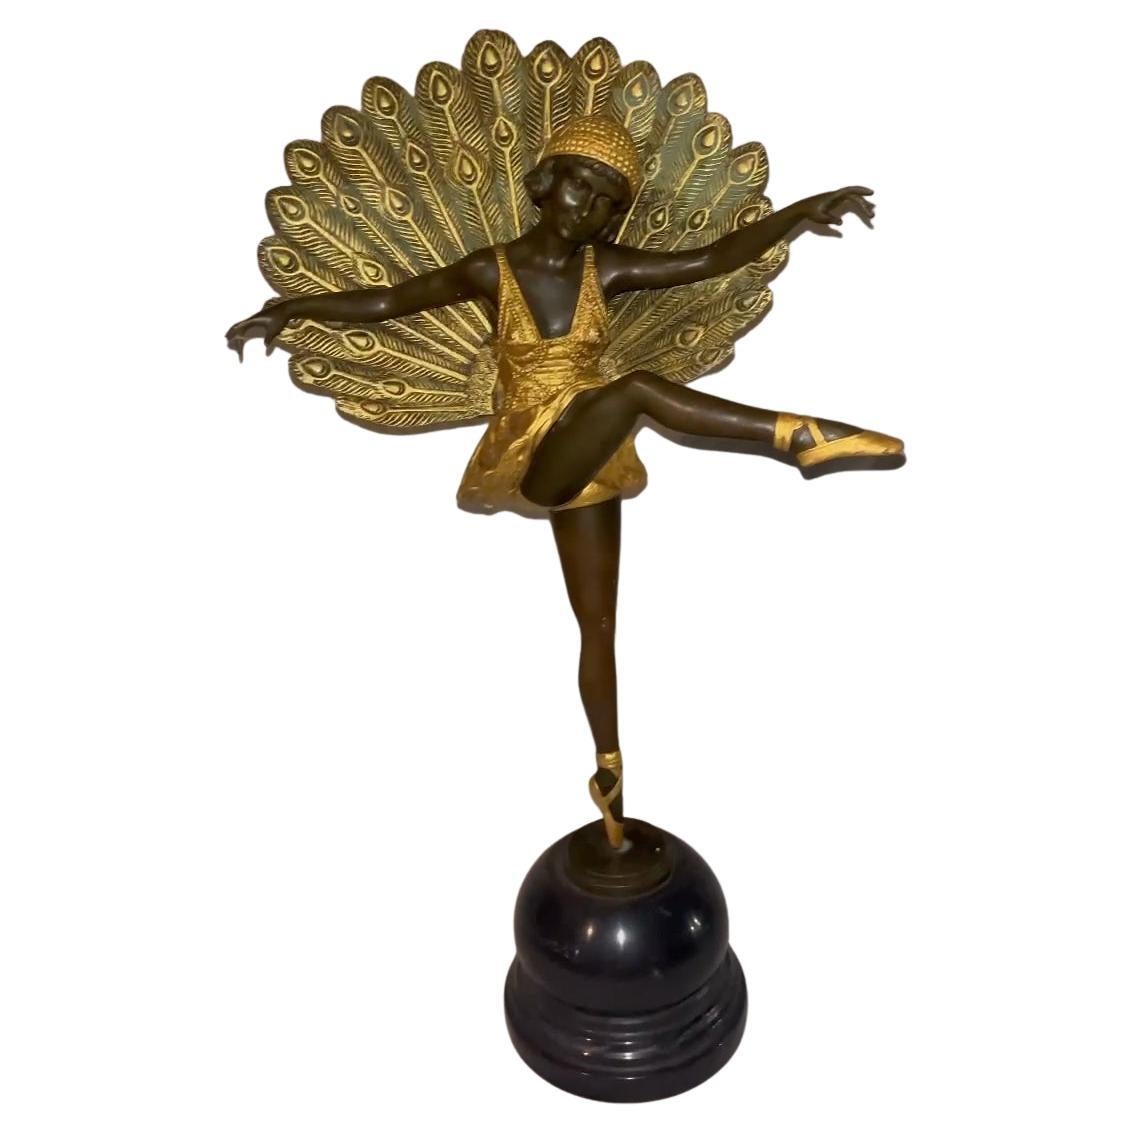 Art Deco Gold Painted Bronze Figure "Phoenician Dancer" by Demetre Chiparus